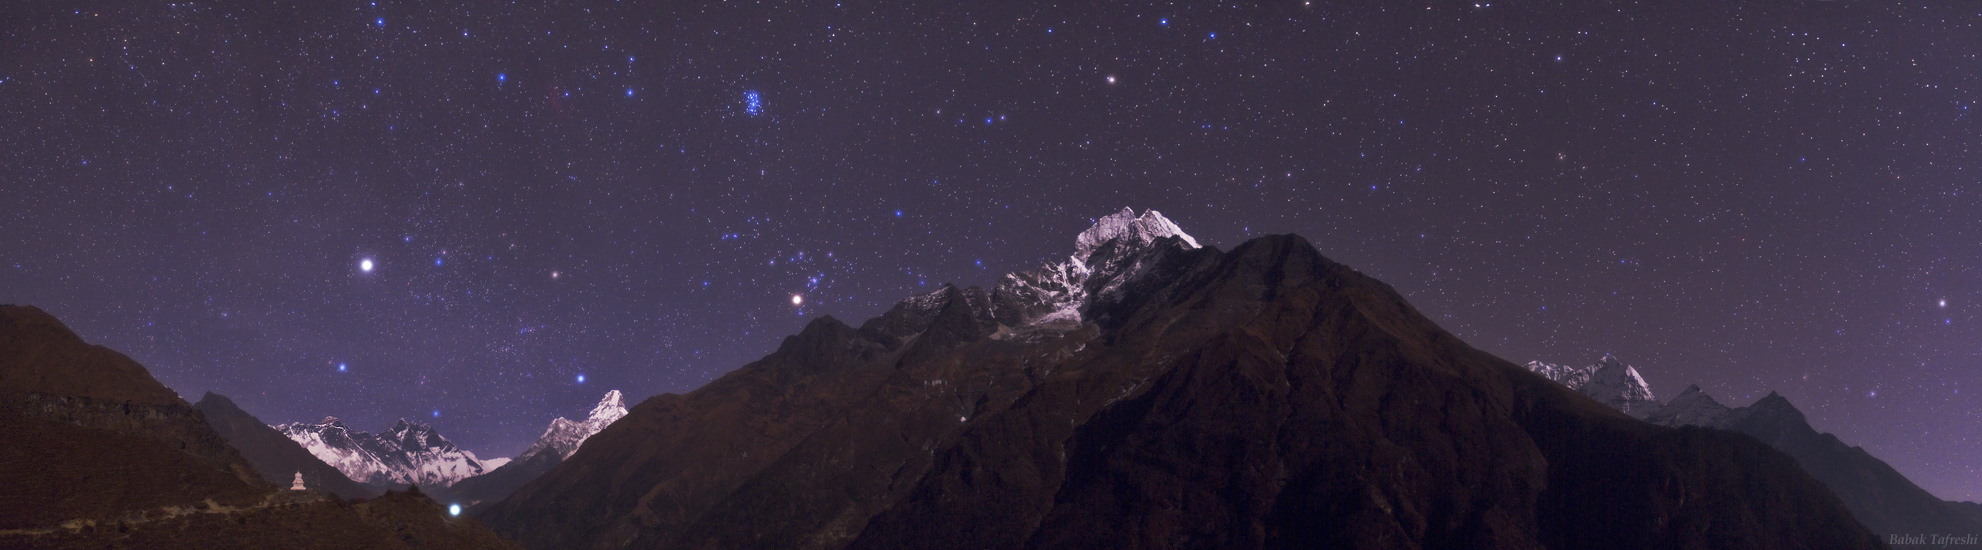 Retrato estelar en el Himalaya